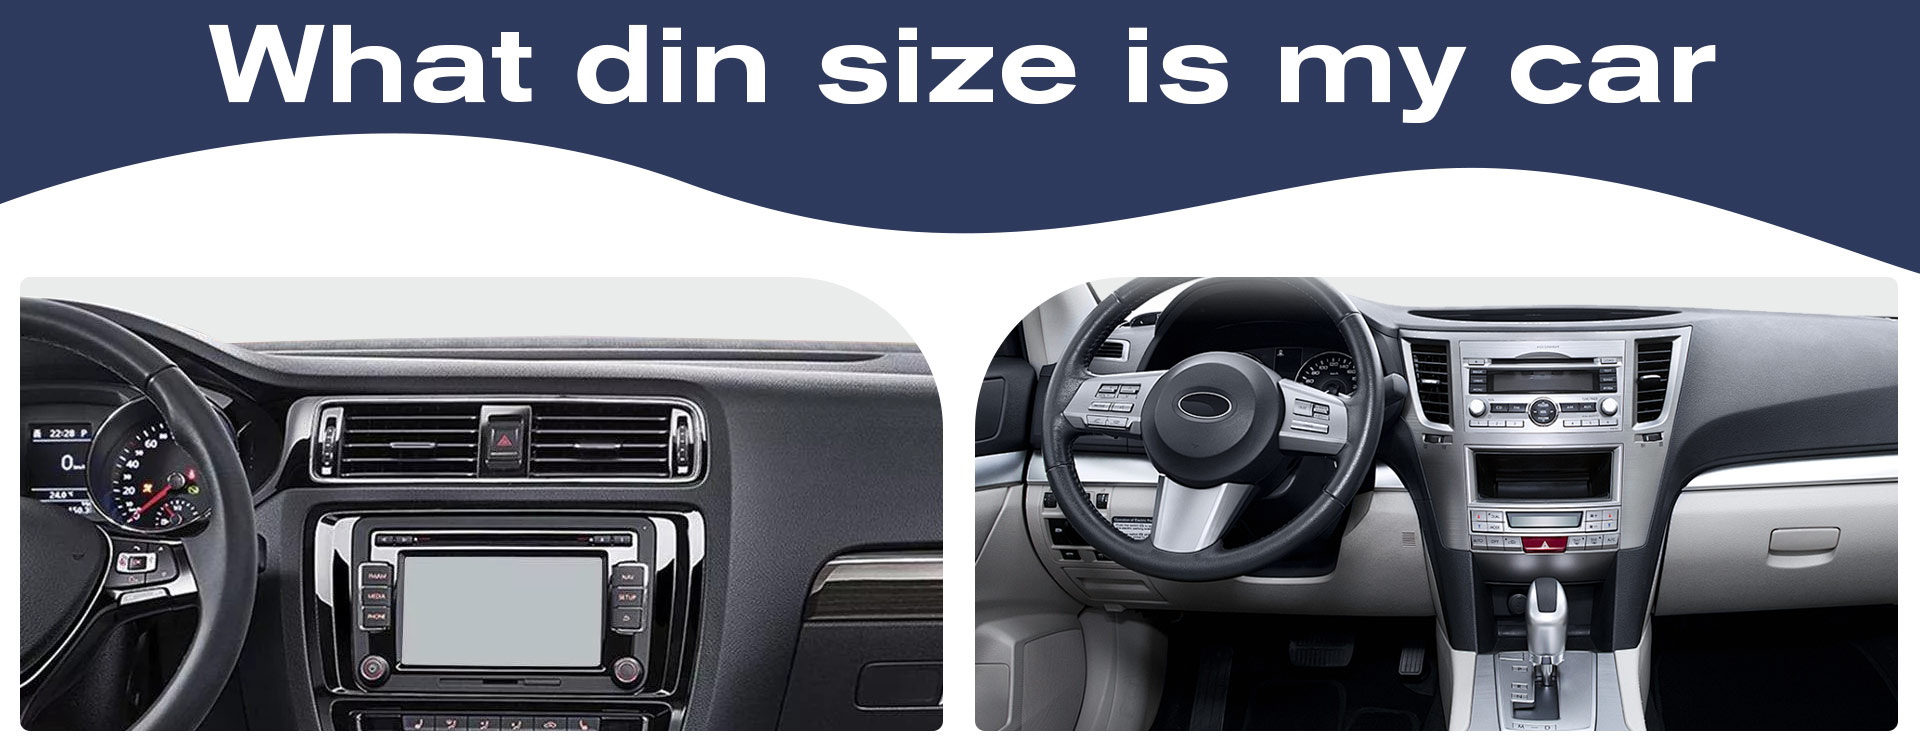 Какой размер DIN у моей машины?